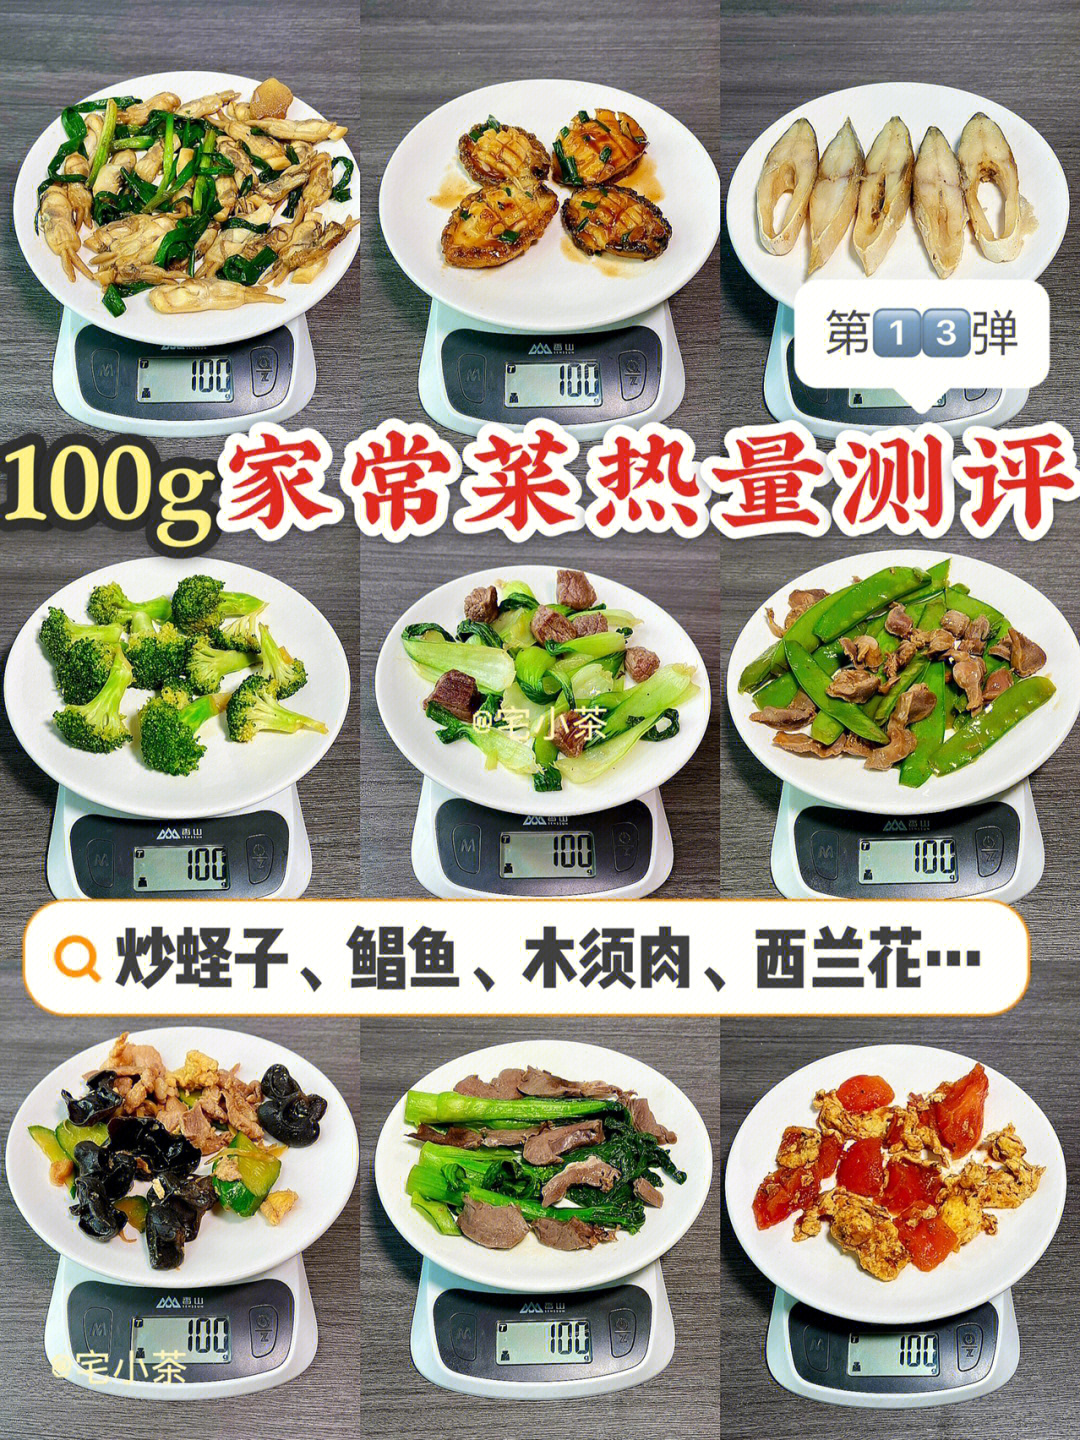 100g家常菜热量测评73第13弹炒蛏子木须肉